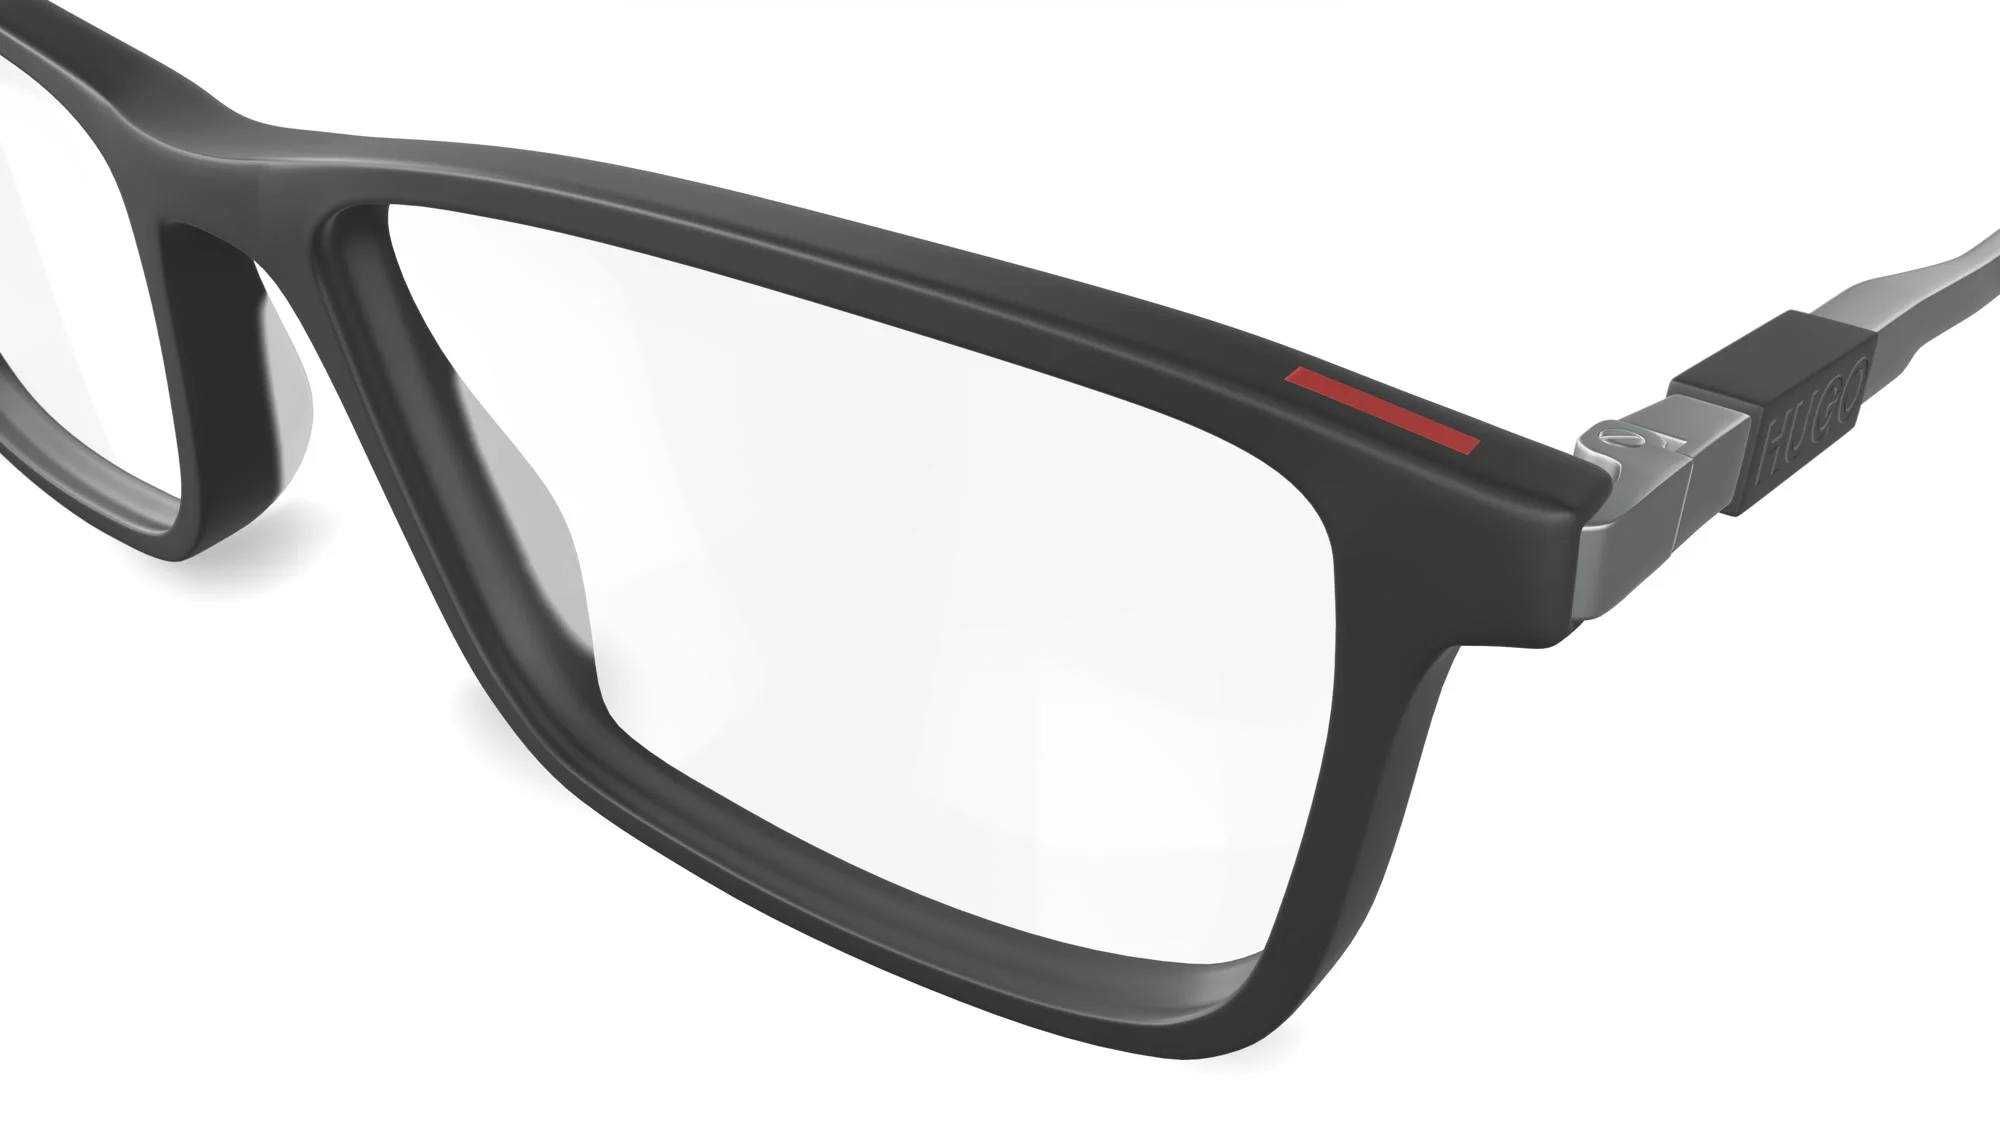 Rame ochelari Hugo Boss HG 21 Unisex Glasses Frame Ochelari de Vedere